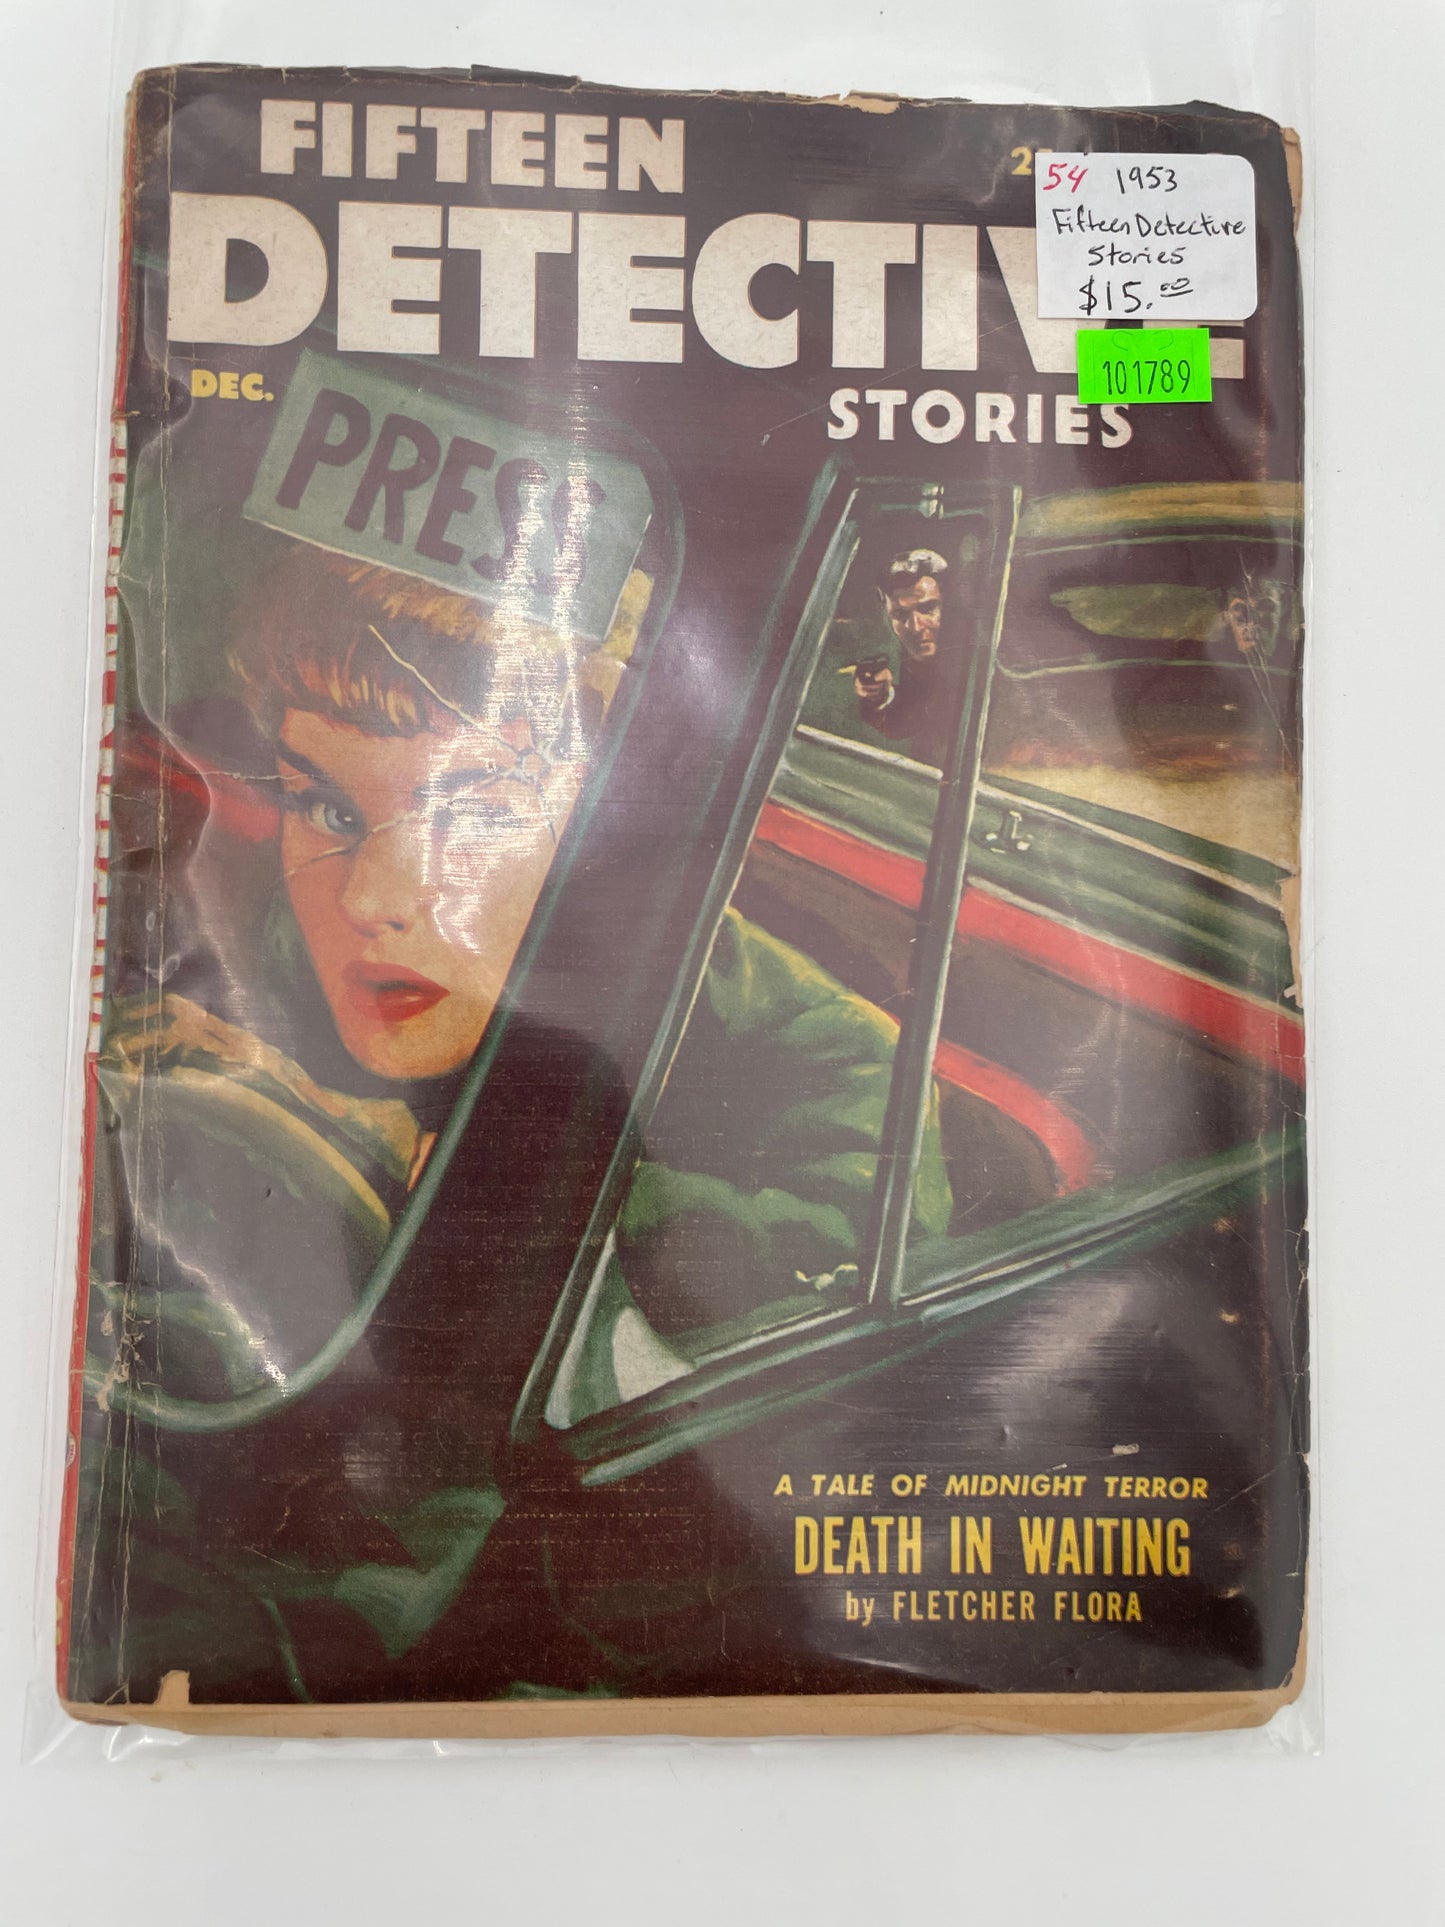 Fifteen Detective Stories - December 1953 #101789